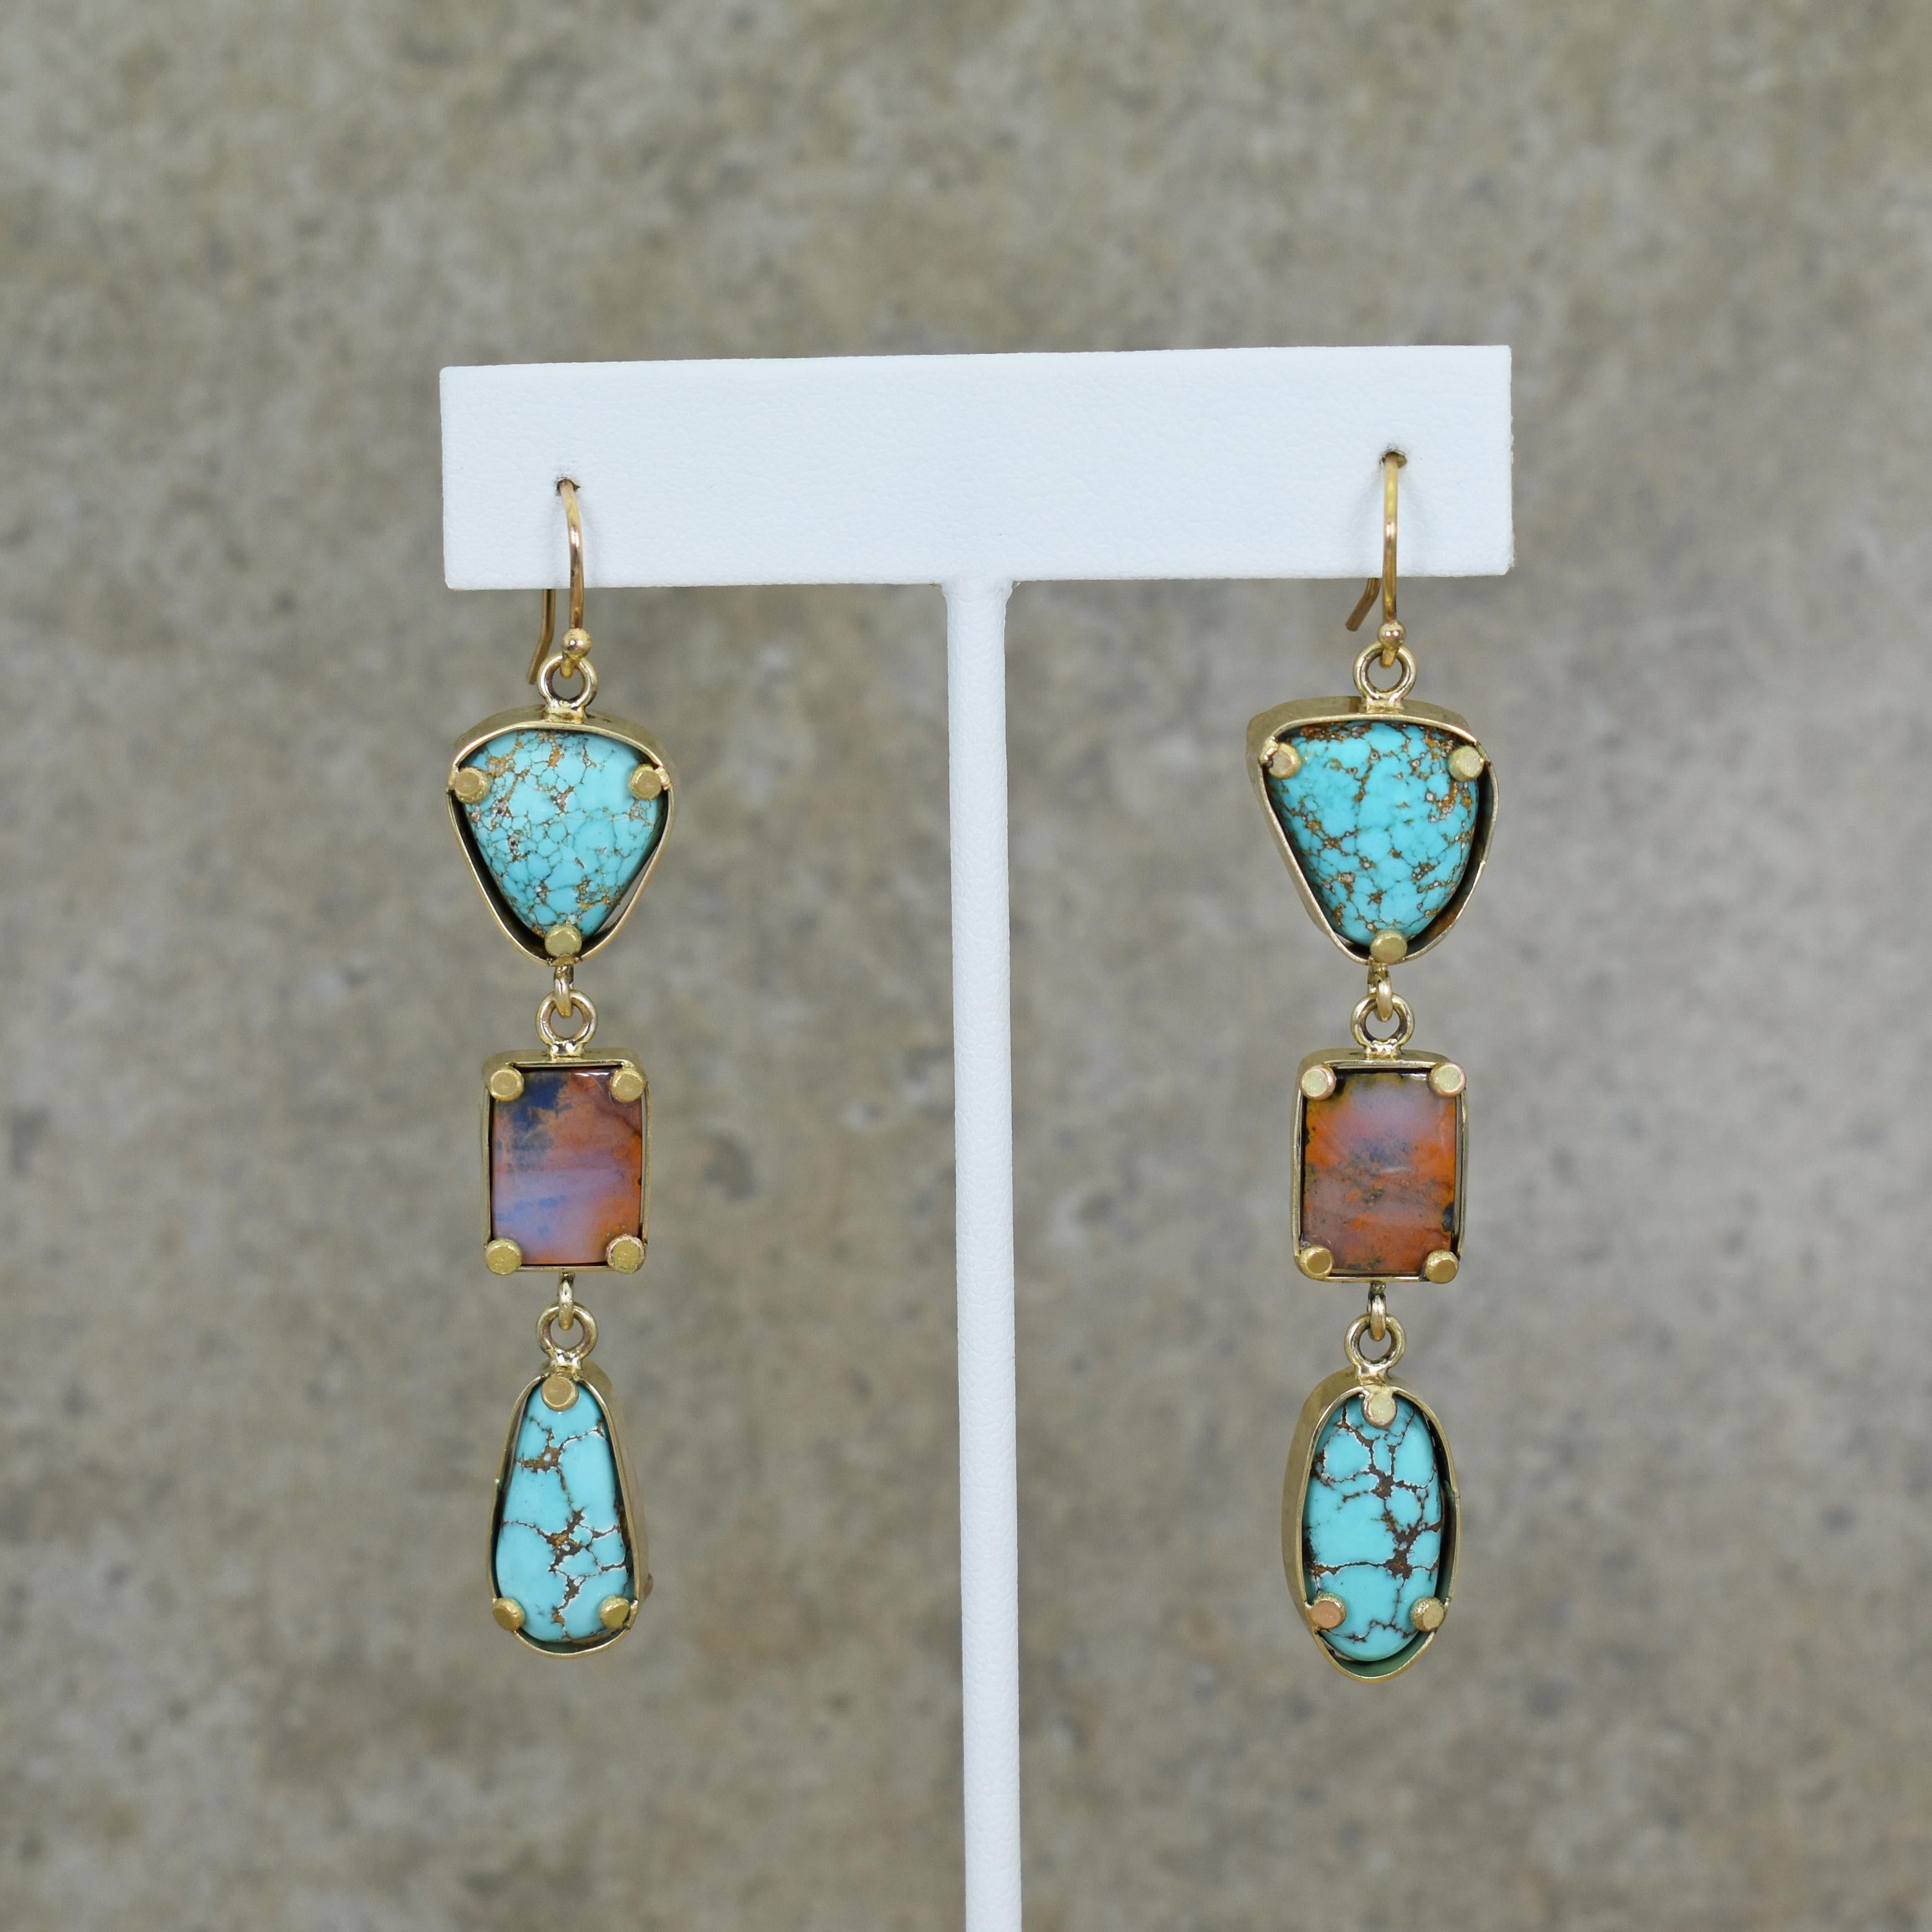 Boucles d'oreilles pendantes en or jaune 18k composées de turquoise Golden Hill du Kazakhstan et d'opale Boulder d'Australie. Les boucles d'oreilles pendantes mesurent 2,88 pouces de long. Ces boucles d'oreilles pendantes contemporaines sont